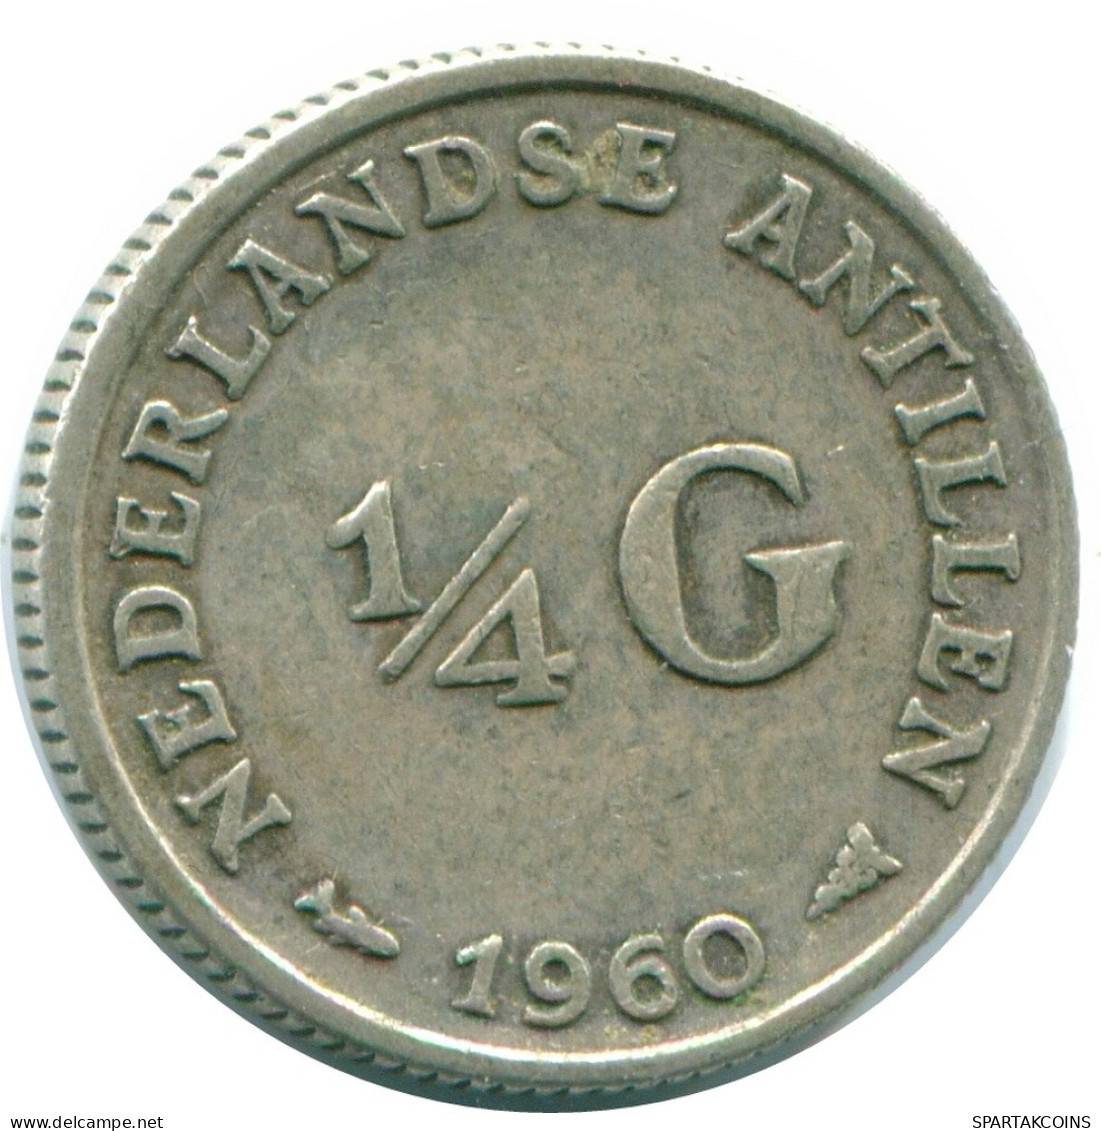 1/4 GULDEN 1960 NIEDERLÄNDISCHE ANTILLEN SILBER Koloniale Münze #NL11050.4.D.A - Nederlandse Antillen